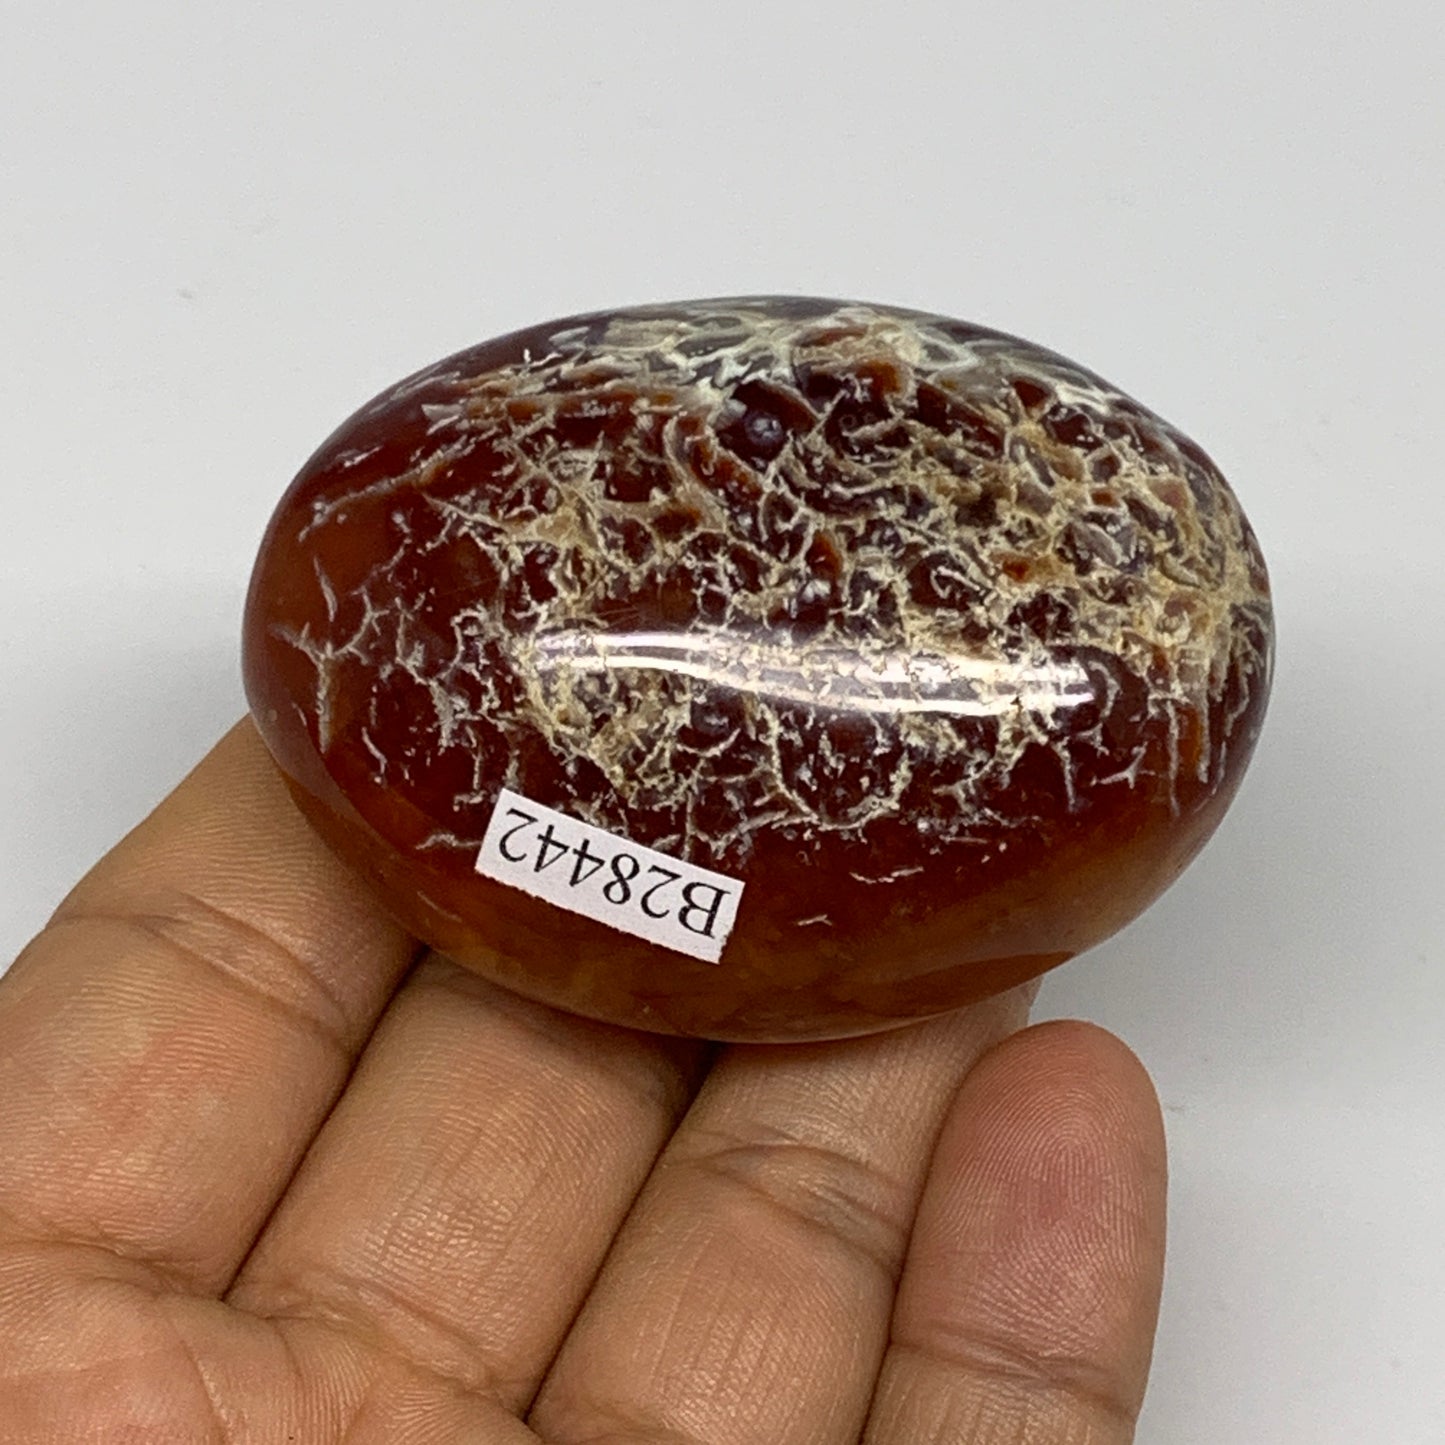 94.7g, 2.3"x1.7"x1", Red Carnelian Palm-Stone Gem Crystal Polished, B28442